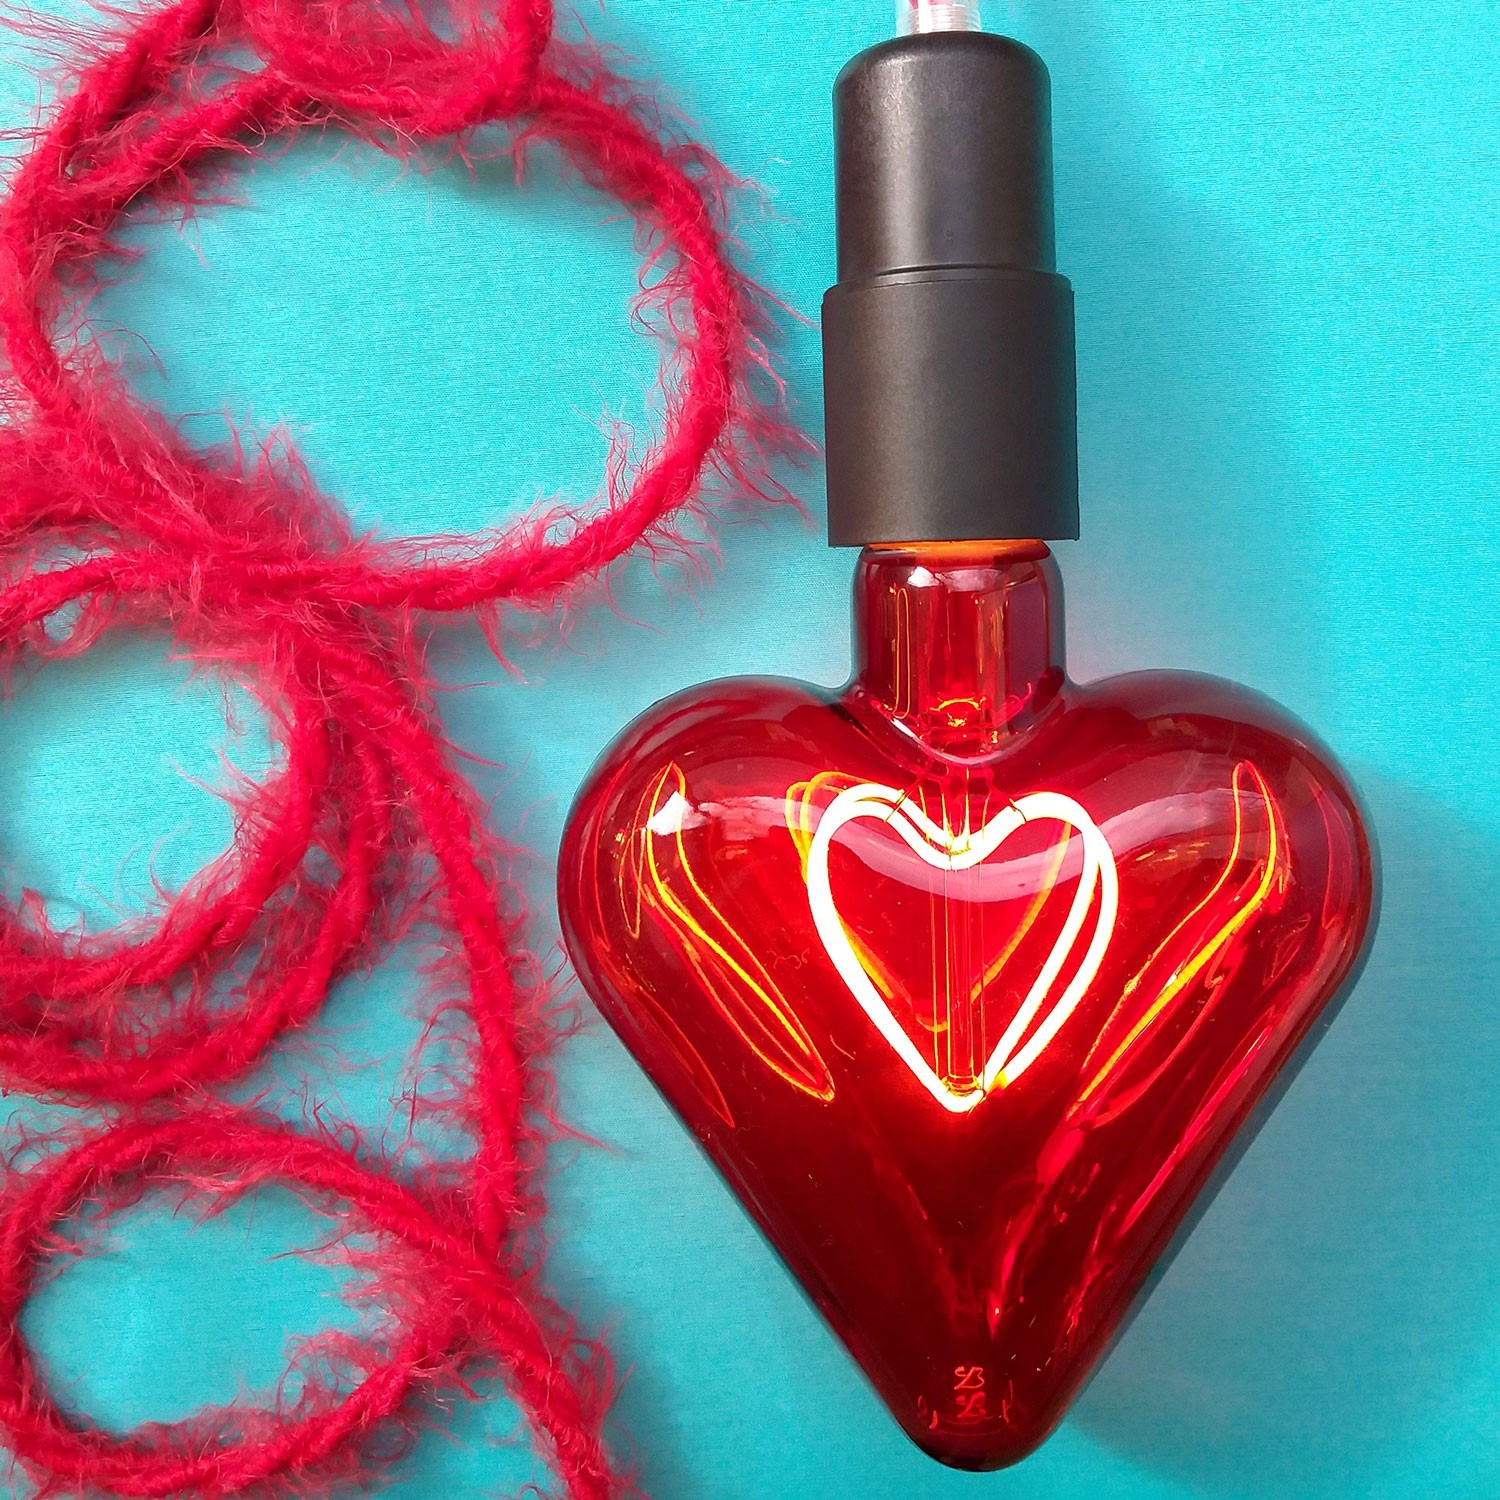 Burlesque gedraaide elektriciteitskabel bekleed met stof, pluizend harig effect, effen kleur rood TP09